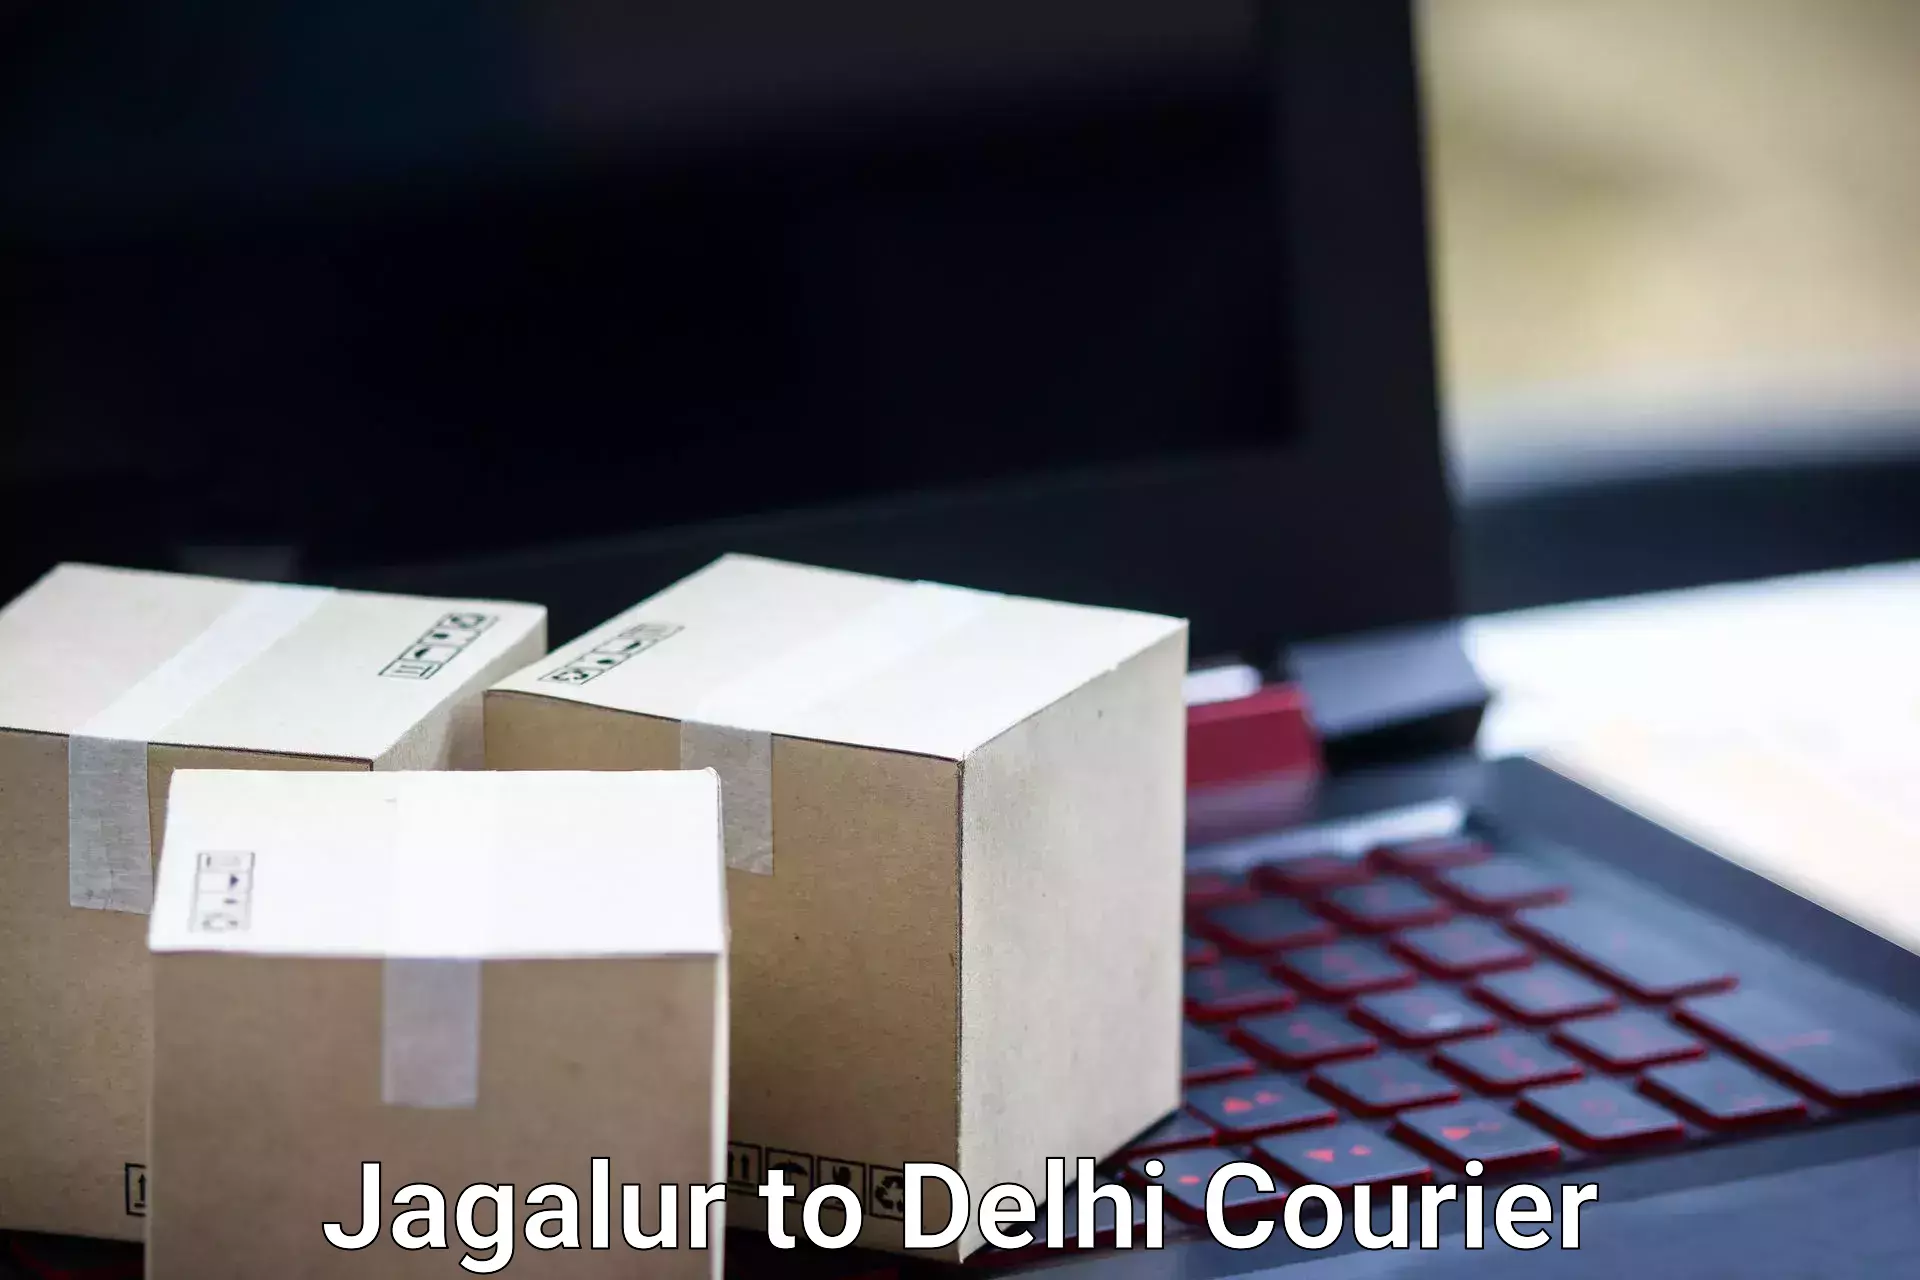 Baggage transport network Jagalur to East Delhi